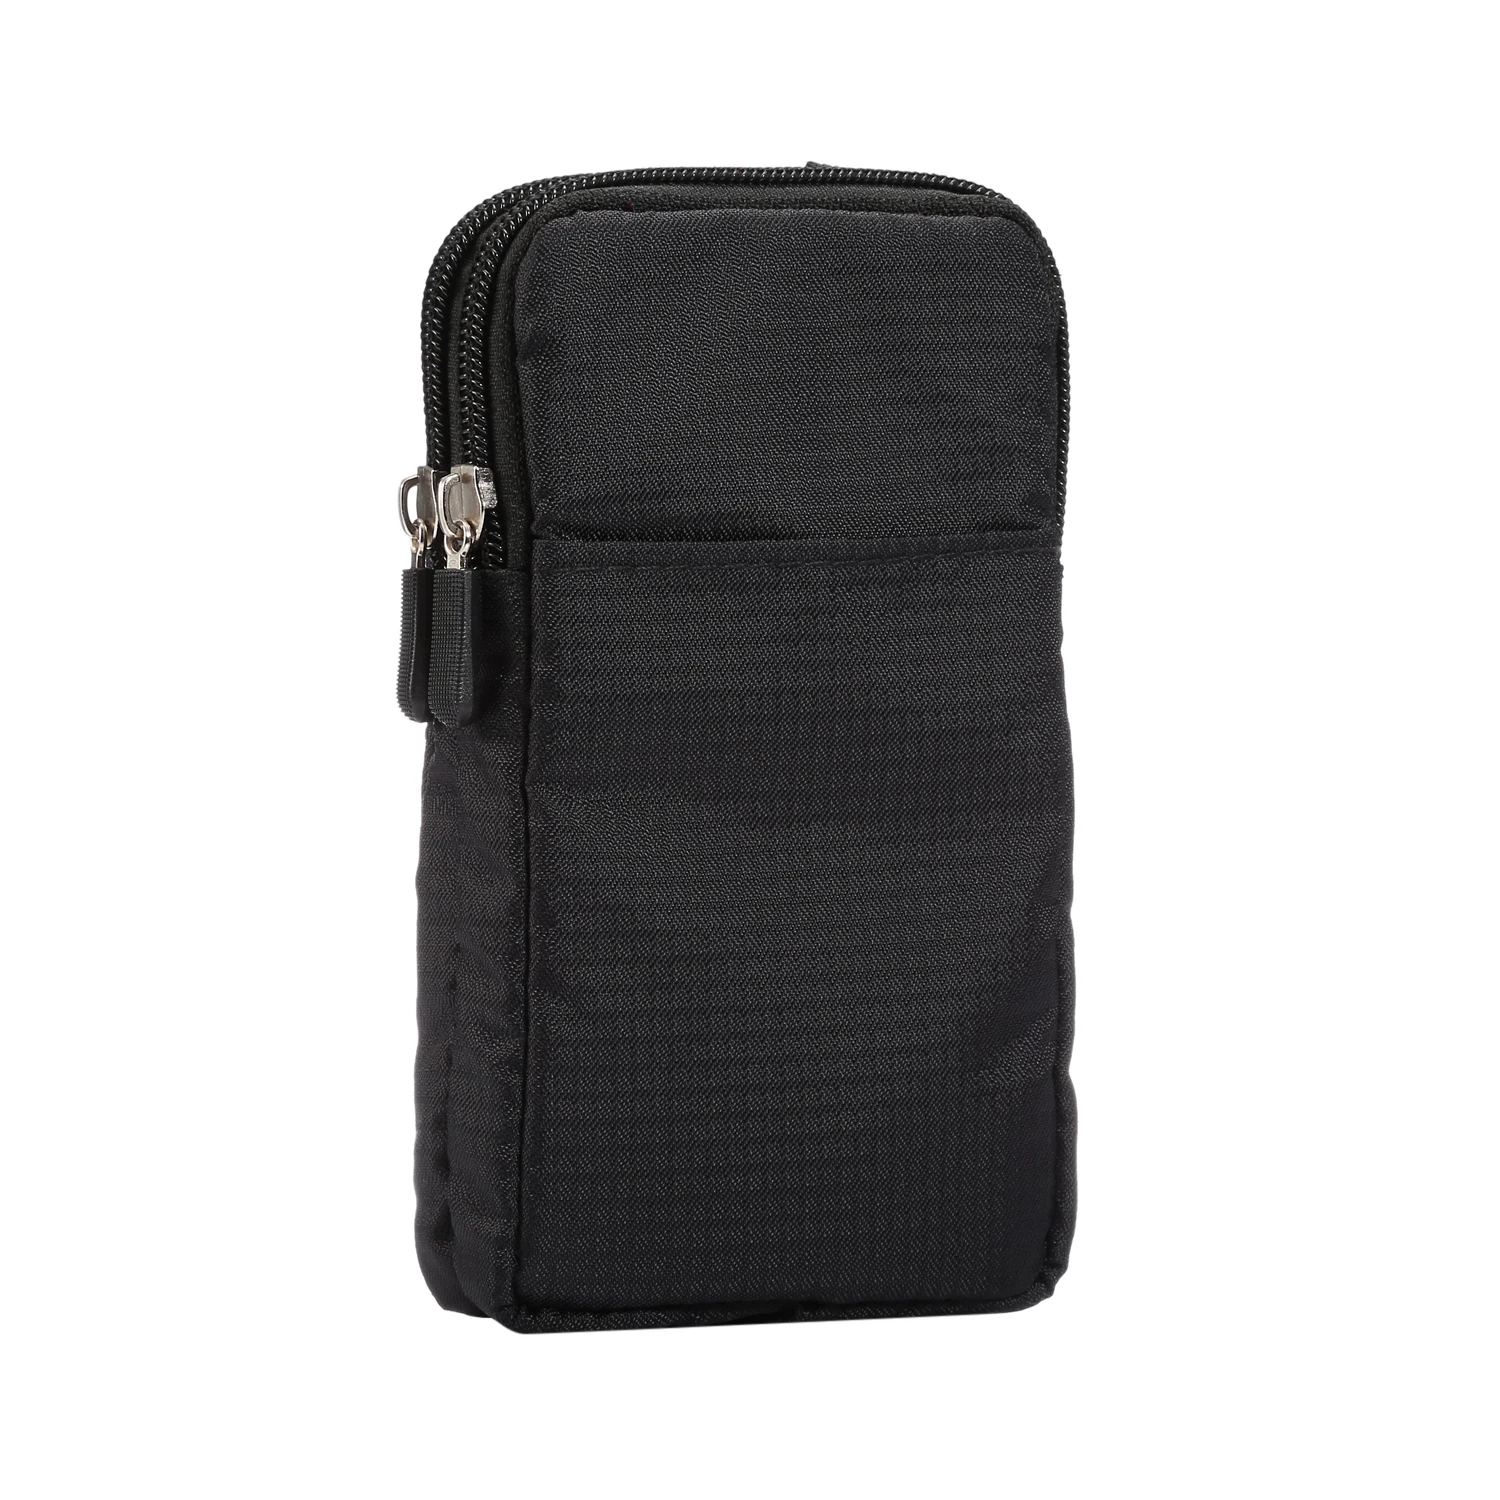 6,0 дюймов, для бега, спорта, туризма, ремень, зажим, поясная сумка, Повседневный, мобильный телефон, кошелек, сумка, нейлоновый чехол для IPhone XS MAX XR 7 8 Plus - Цвет: Black